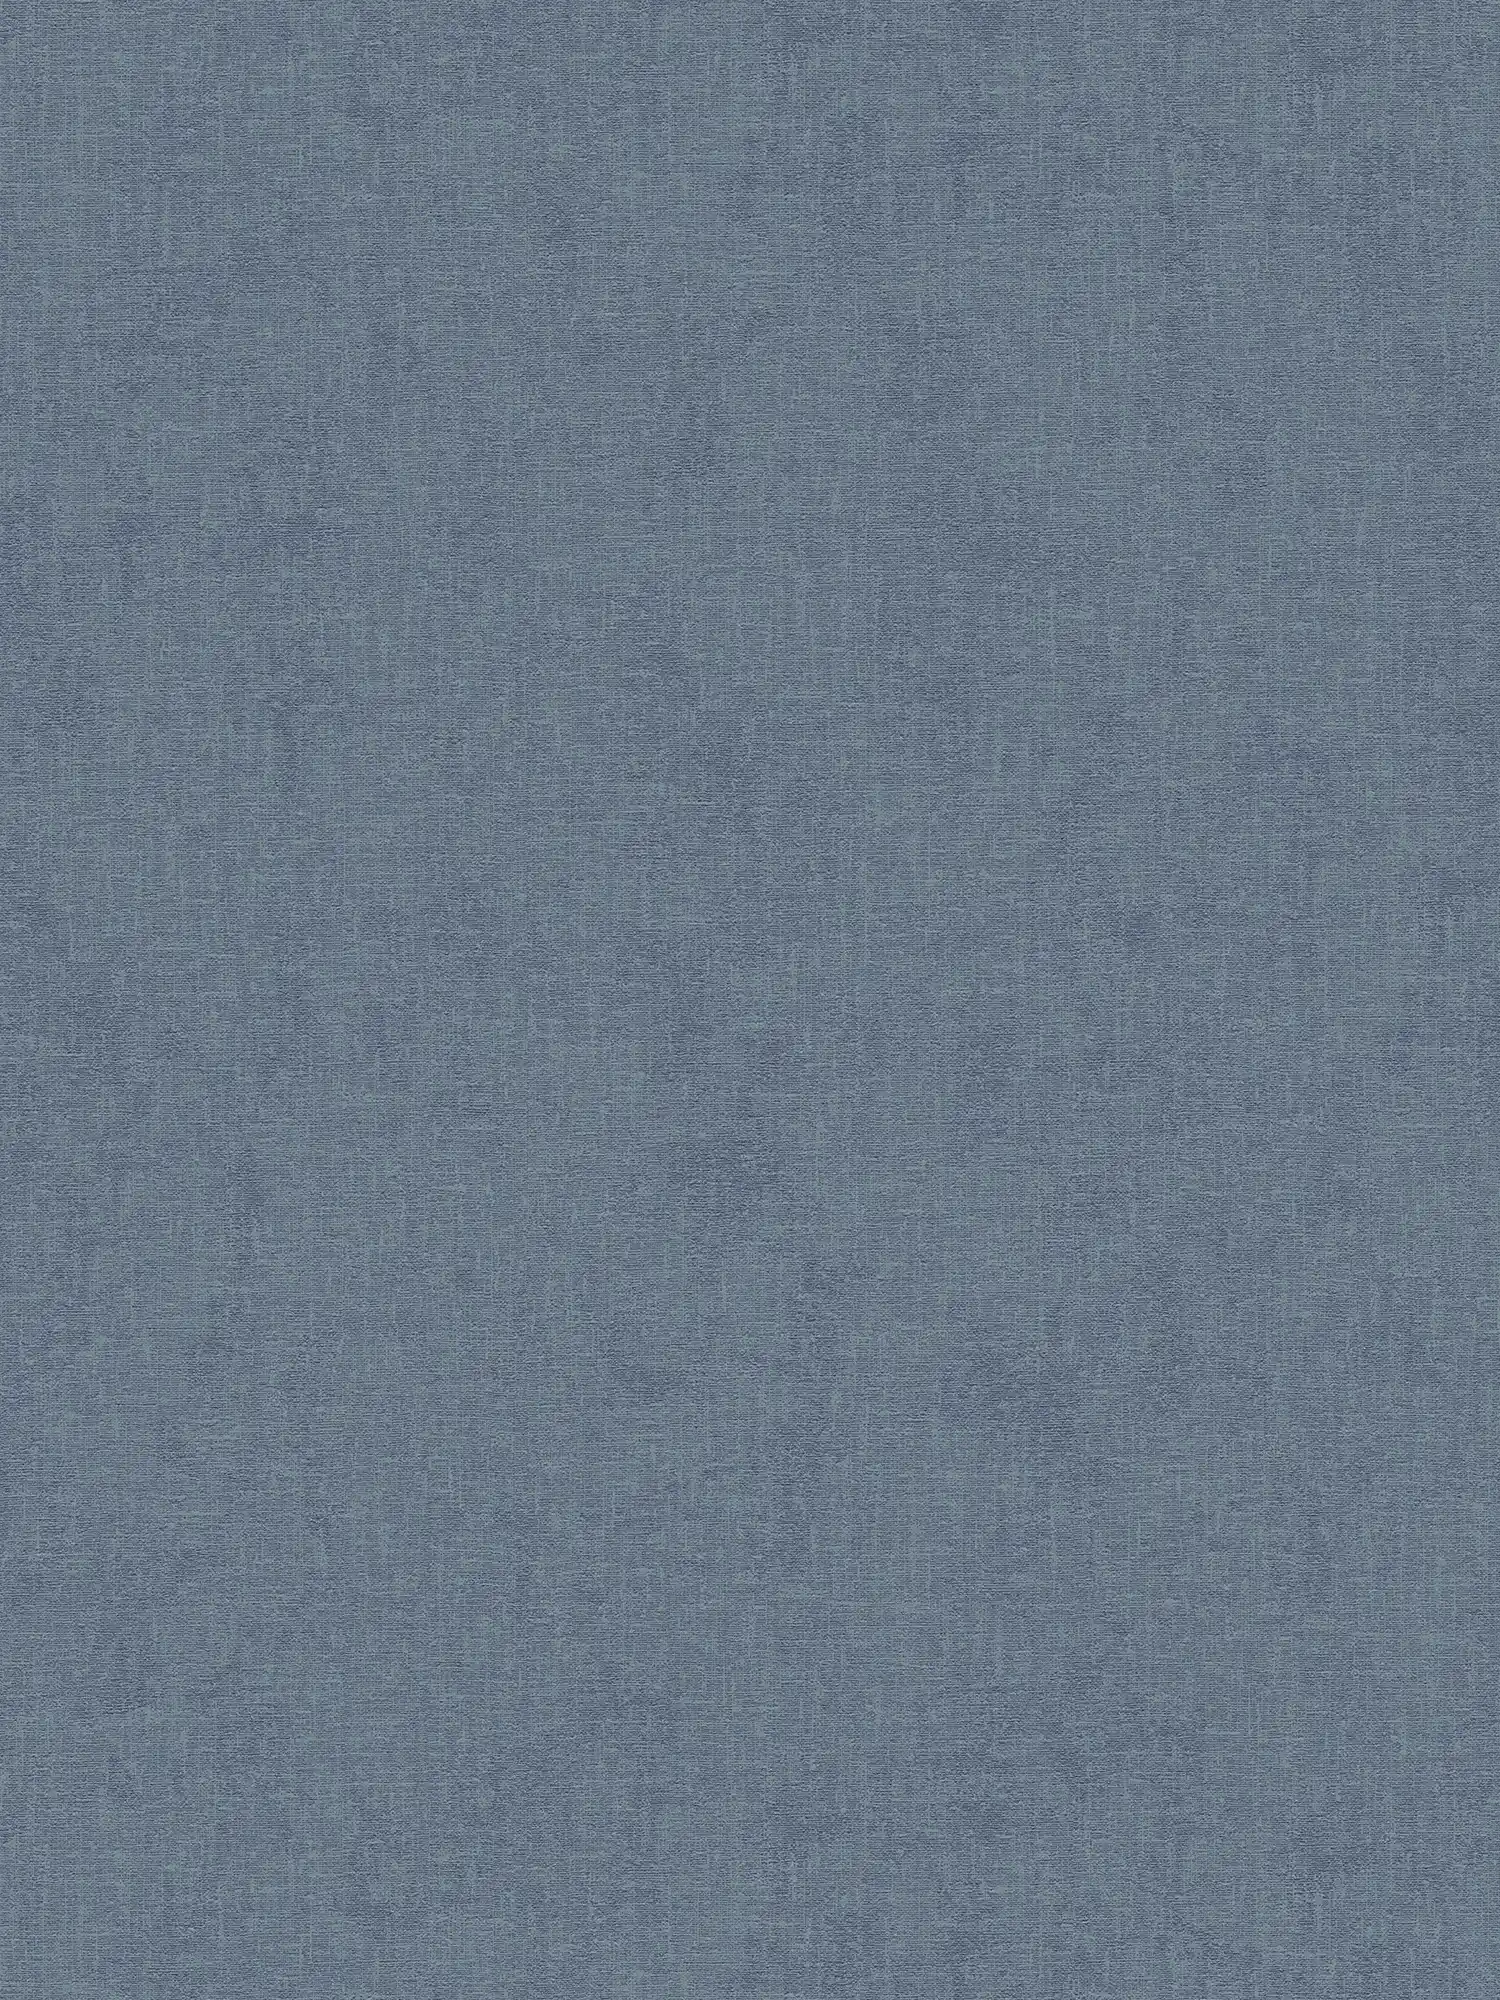 Papel pintado de unidad moteado con aspecto textil - azul
